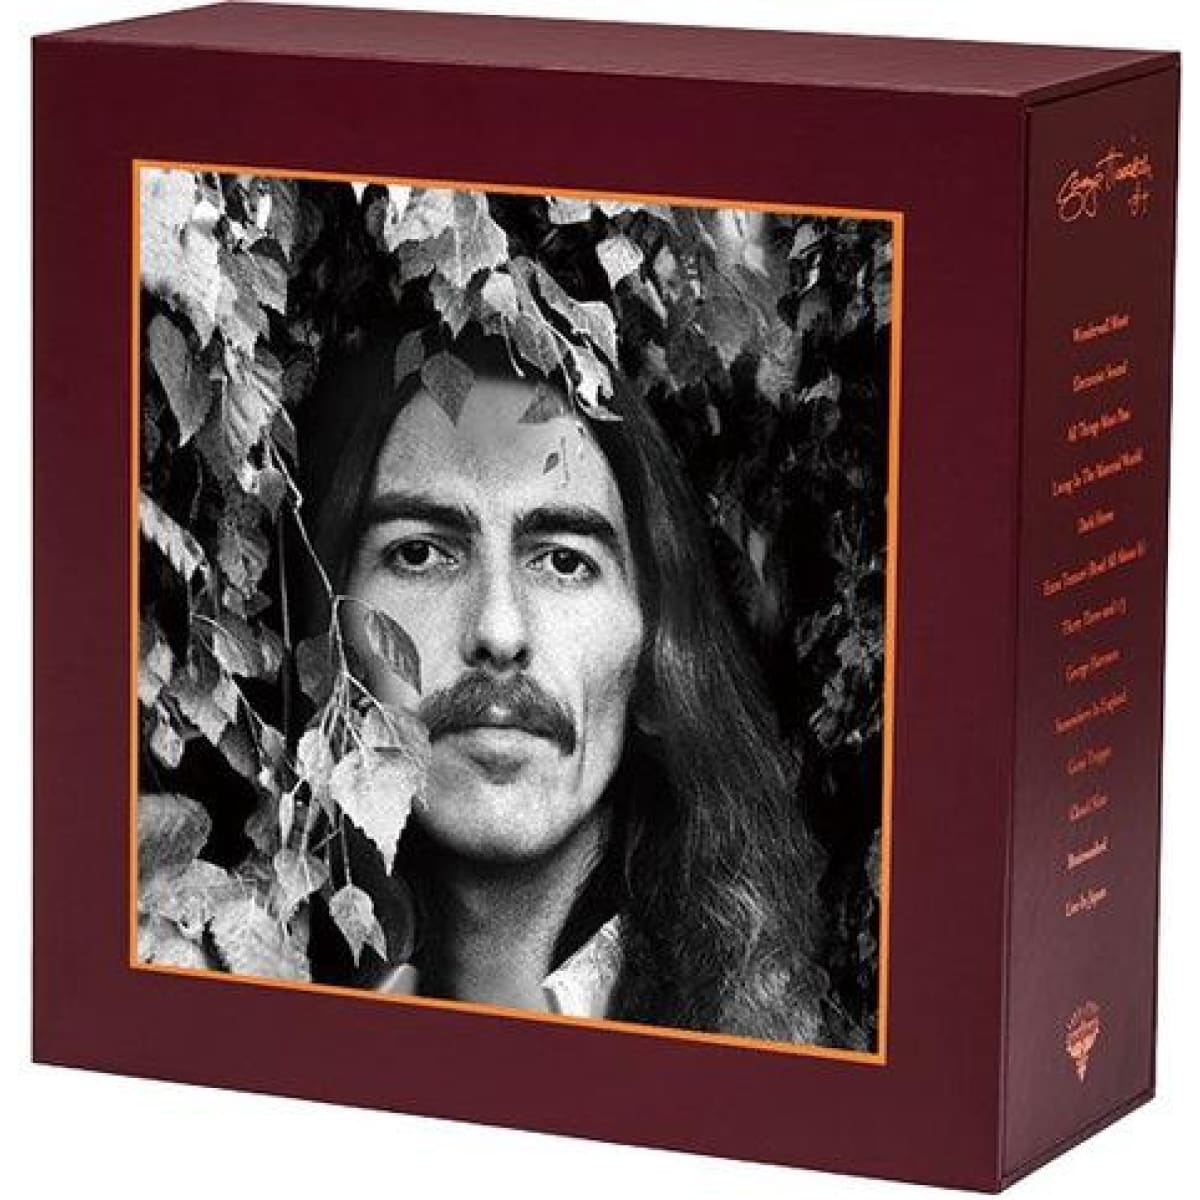 18枚組アナログ盤 「ジョージ・ハリスン・アナログ盤ボックス」直輸入 George Harrison 公式 レコード